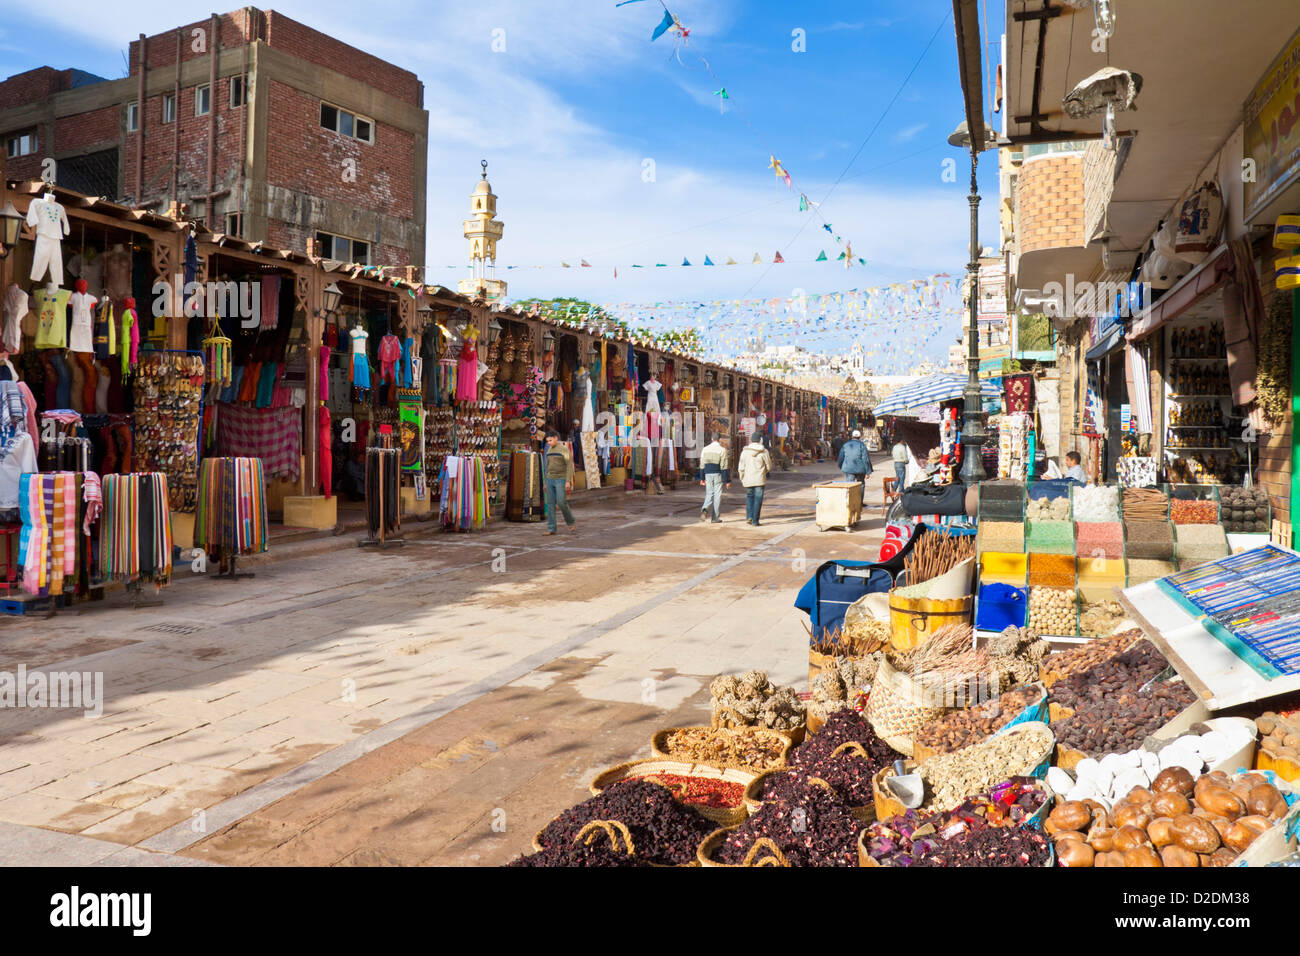 Markt-Basar Straßenszene mit Ständen verkauft Gewürze Farbstoffe und Kleidung in den Souk in Assuan Ägypten Nahost Stockfoto